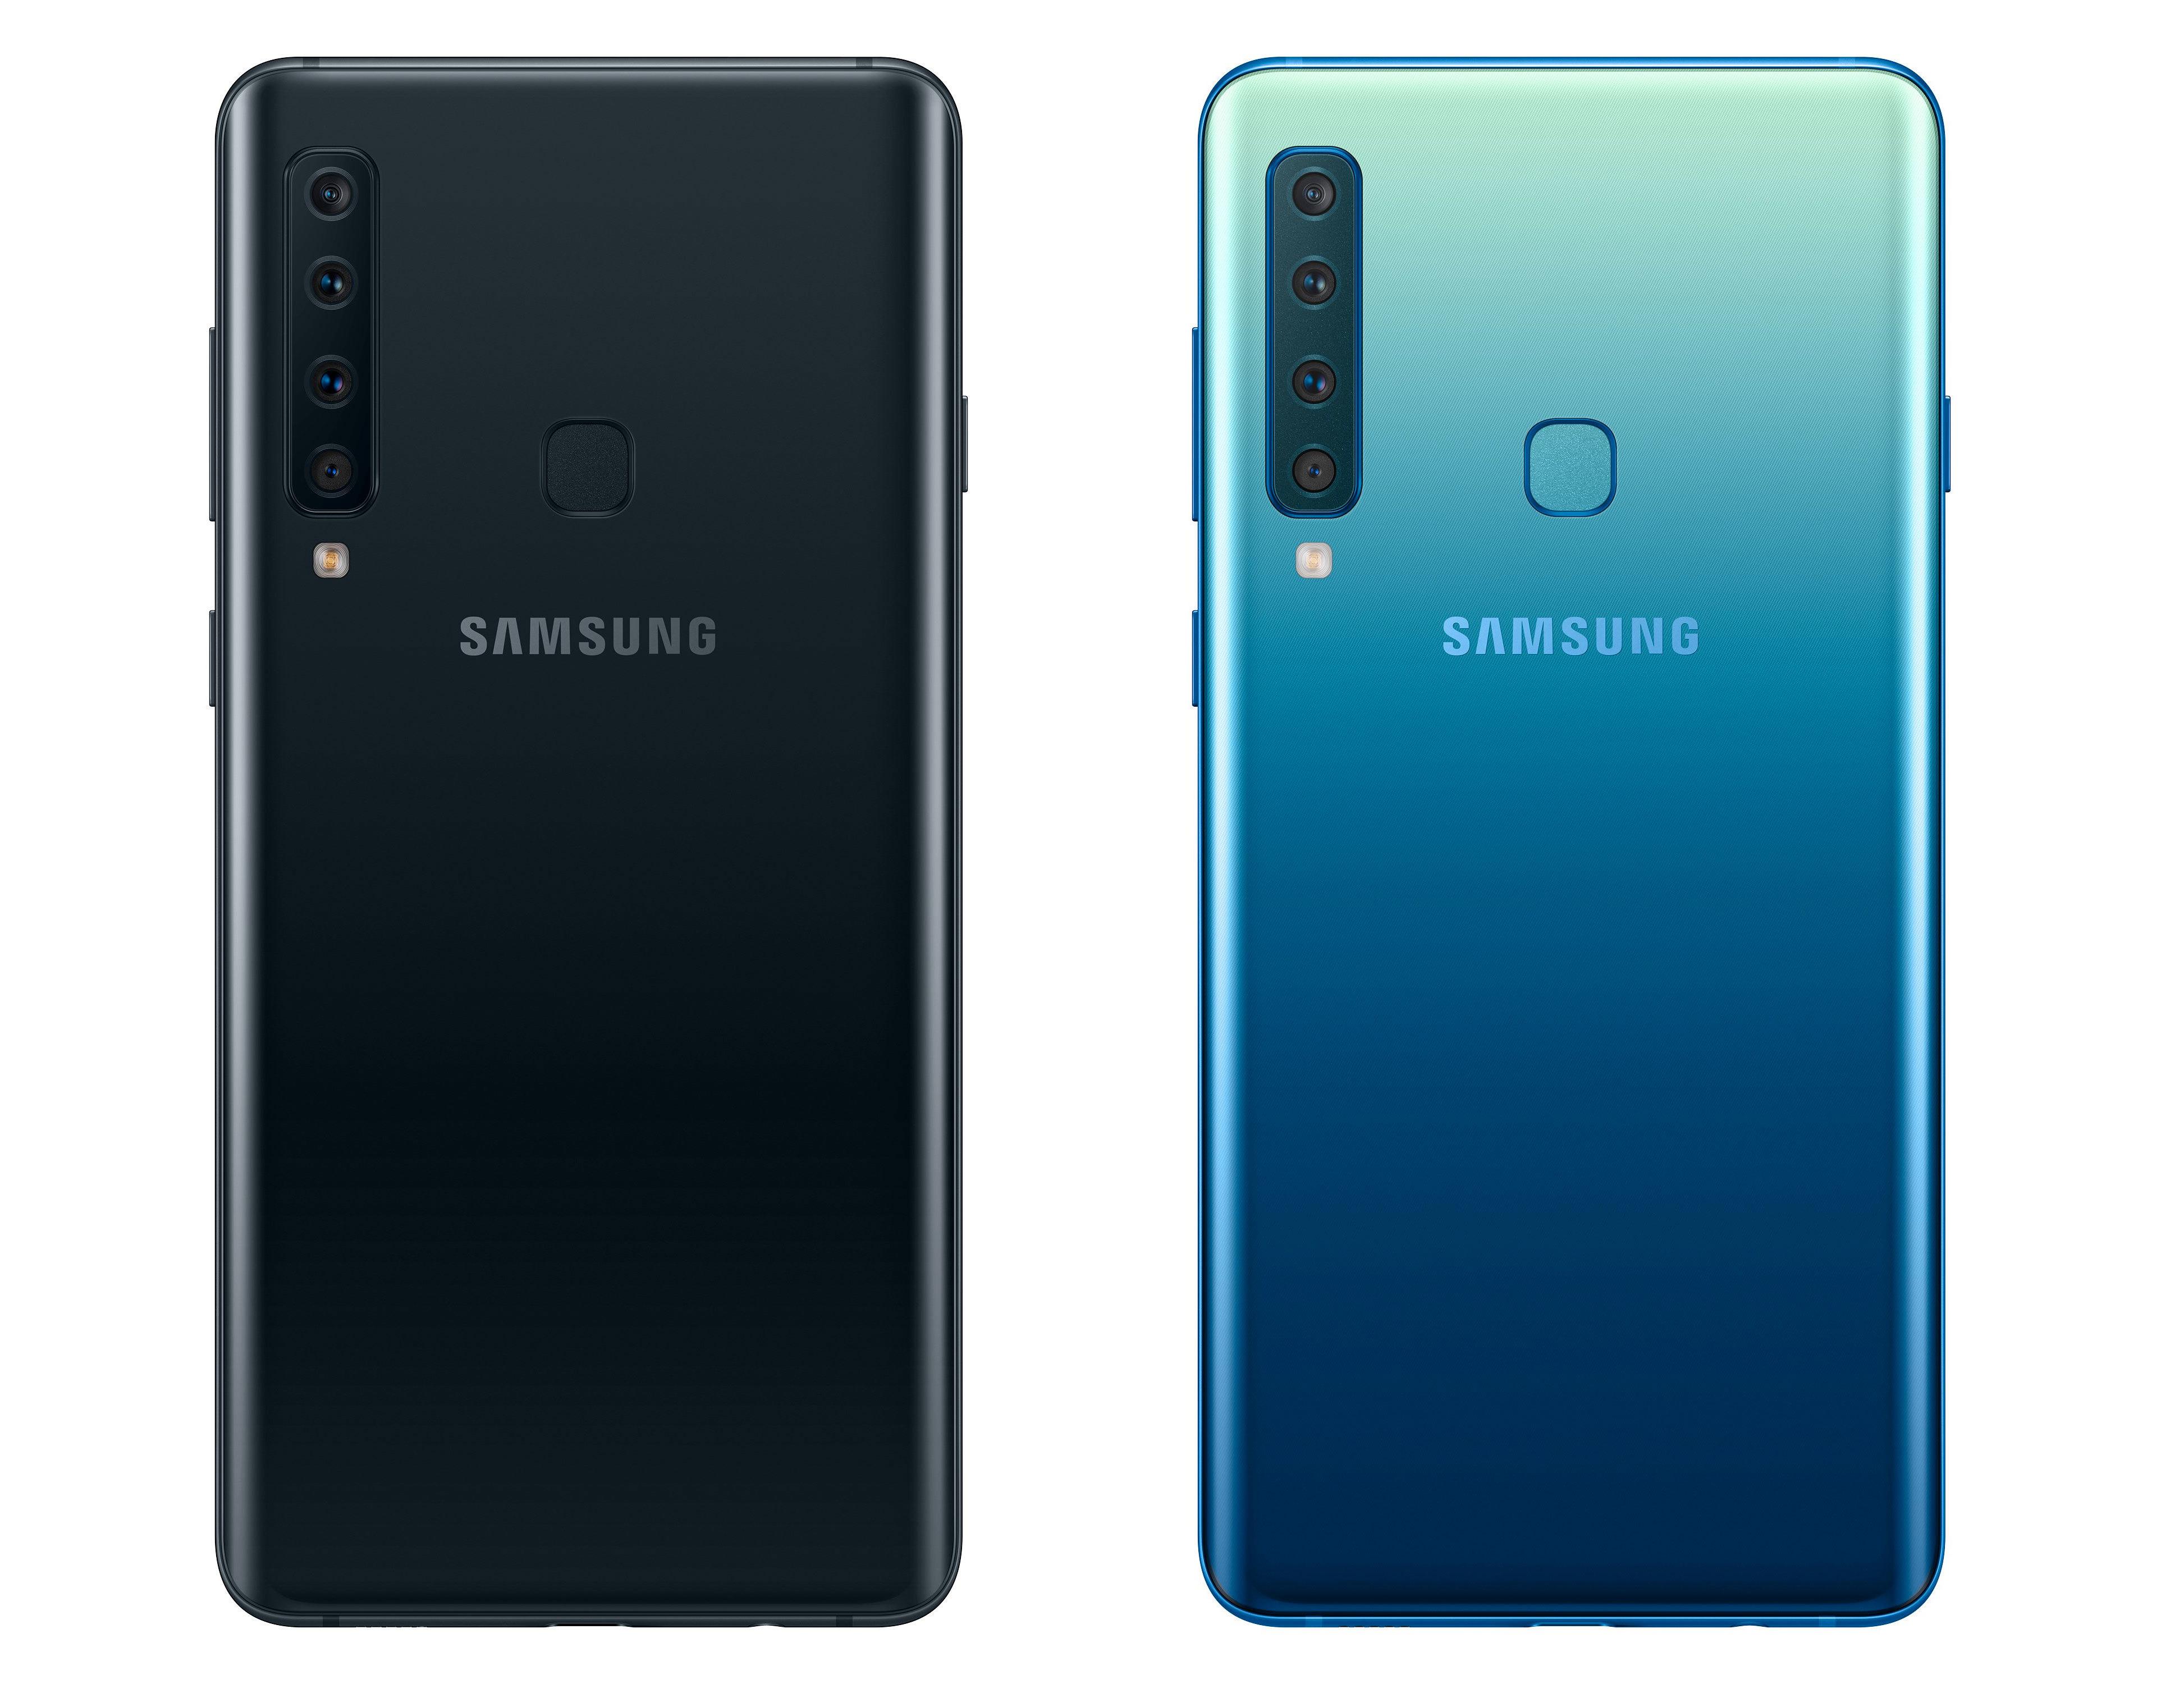 Mobilen kommer to farger - svart og blå.